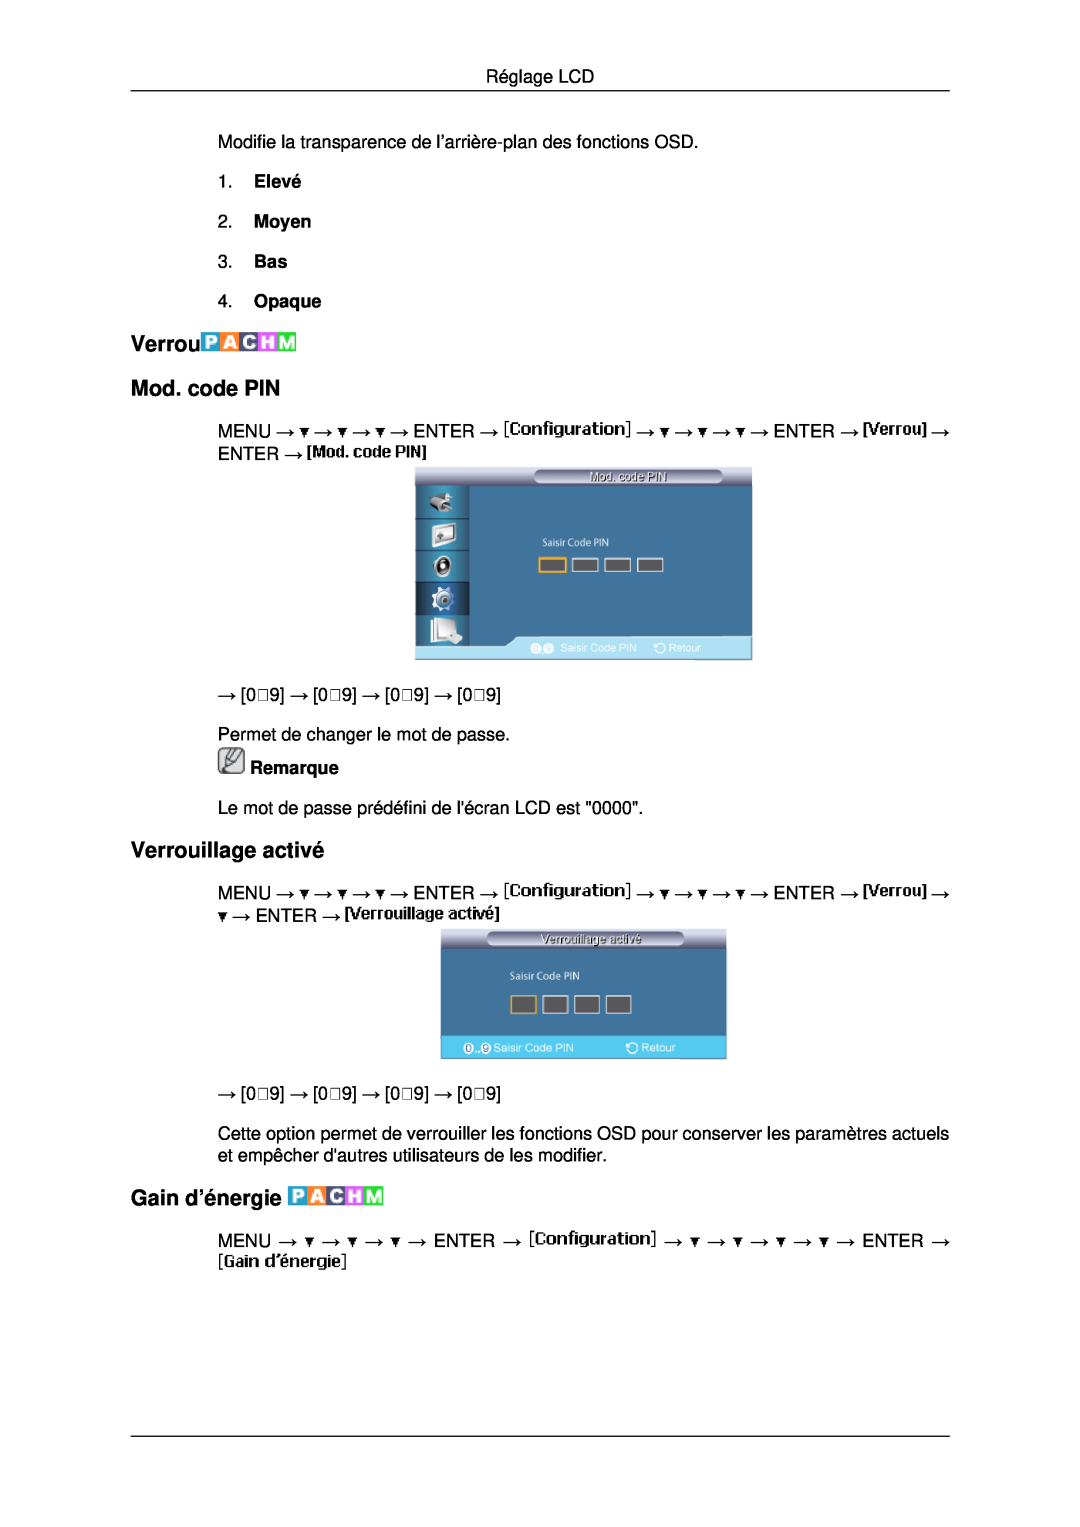 Samsung LH40MRTLBC/EN Verrou Mod. code PIN, Verrouillage activé, Gain d’énergie, Elevé 2. Moyen 3. Bas 4. Opaque, Remarque 